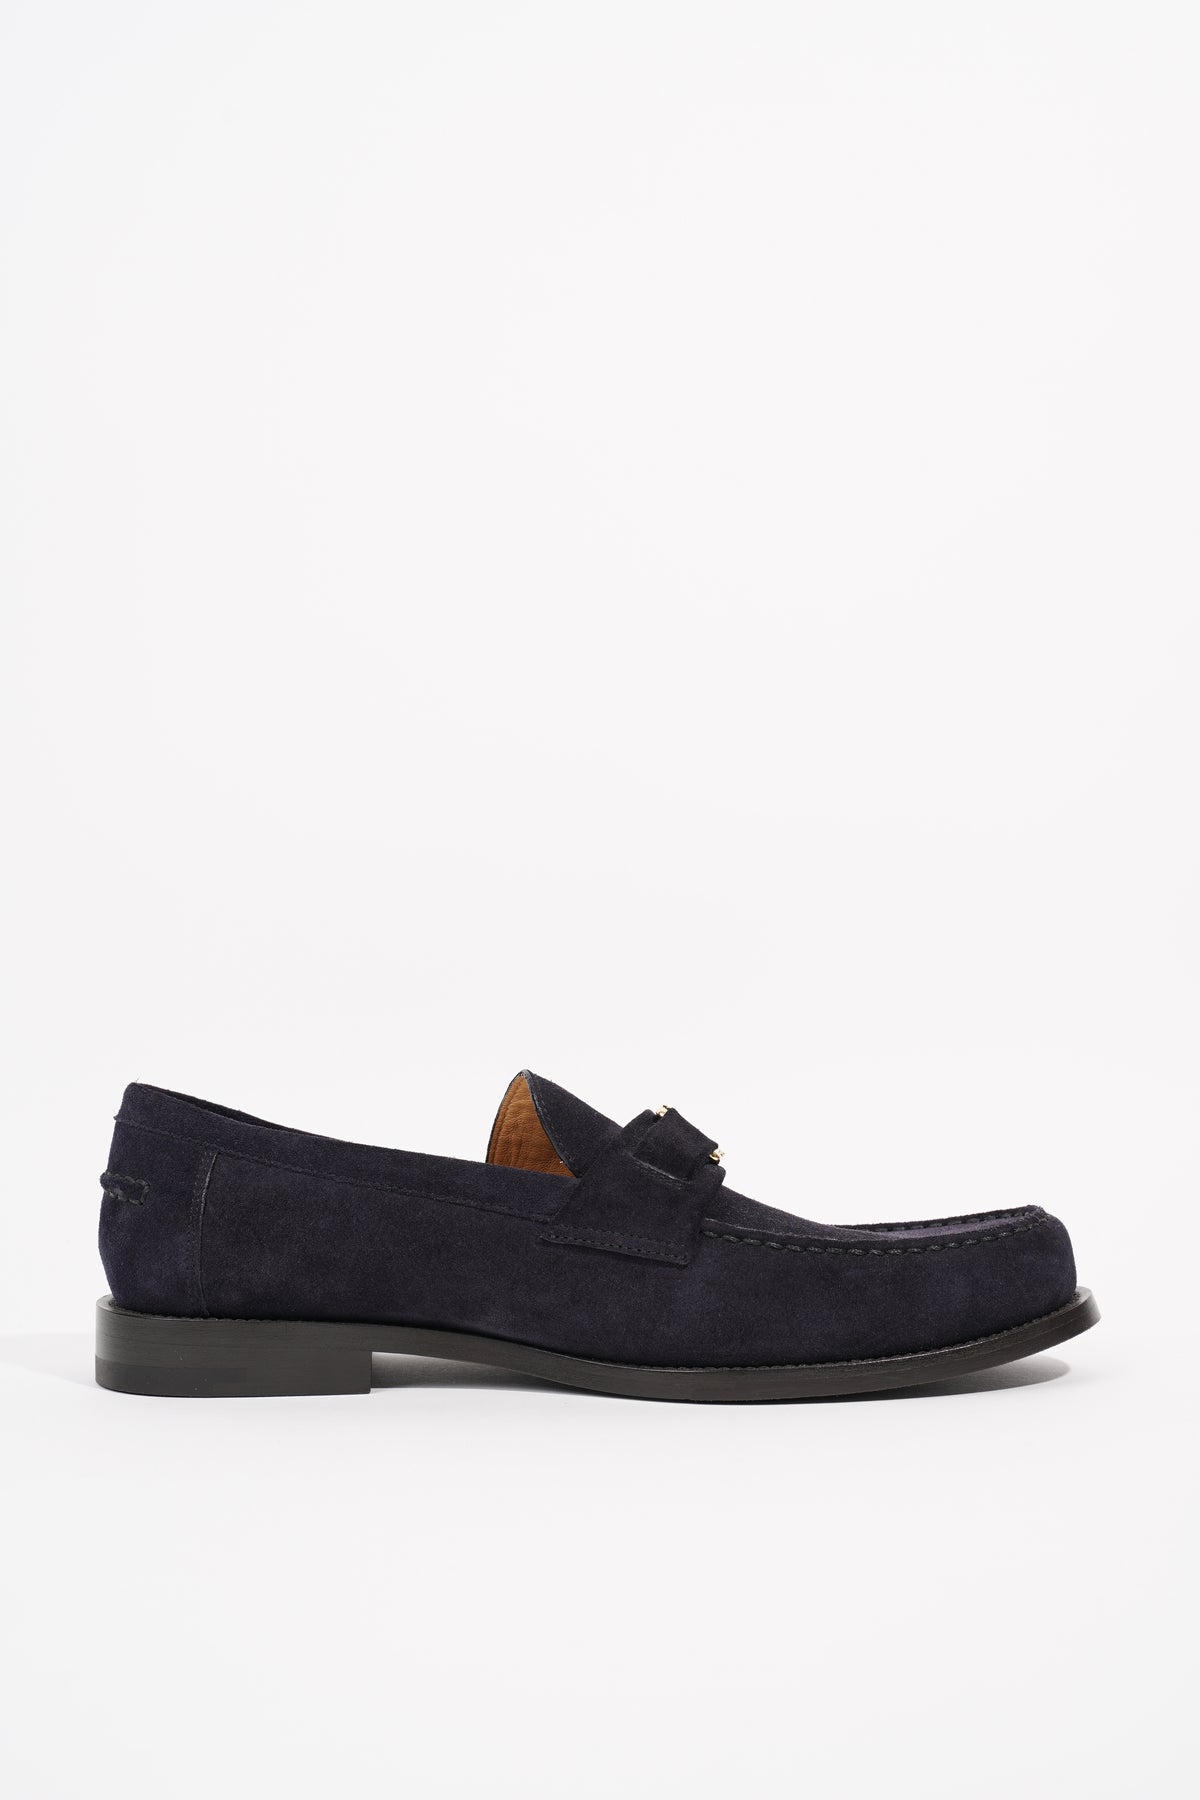 Louis Vuitton Men's Brown Suede Saint Germain Loafer Shoes size 8.5 US/ 7.5  LV Louis Vuitton Цвет: Коричневый; Размер: 8.5 купит